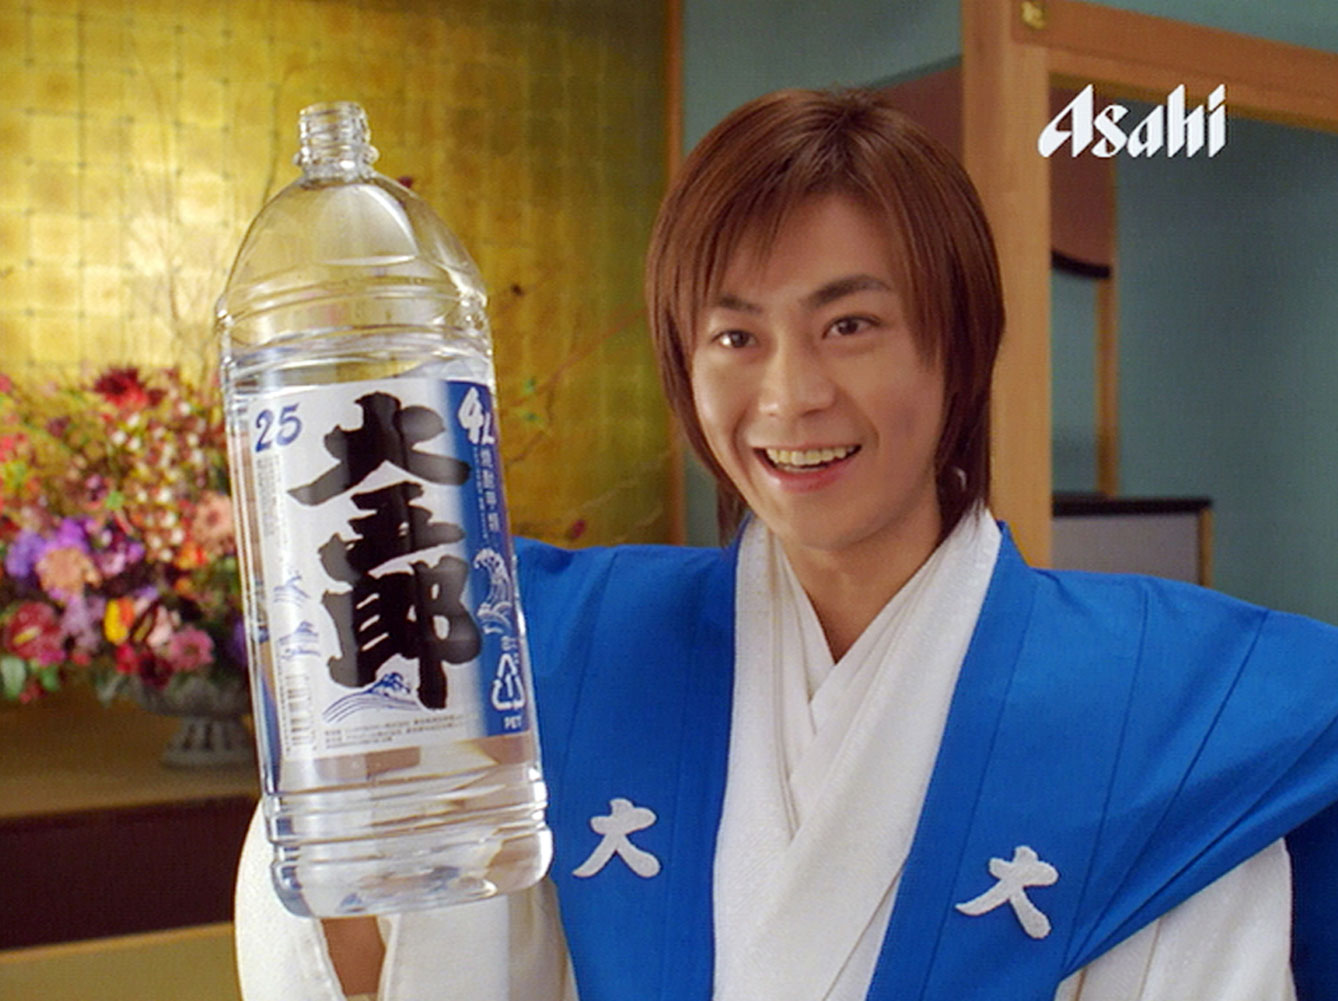 甲類焼酎 大五郎 で オリジナル 氷川きよしグッズ が当たる消費者キャンペーンを実施 ニュースリリース アサヒビール